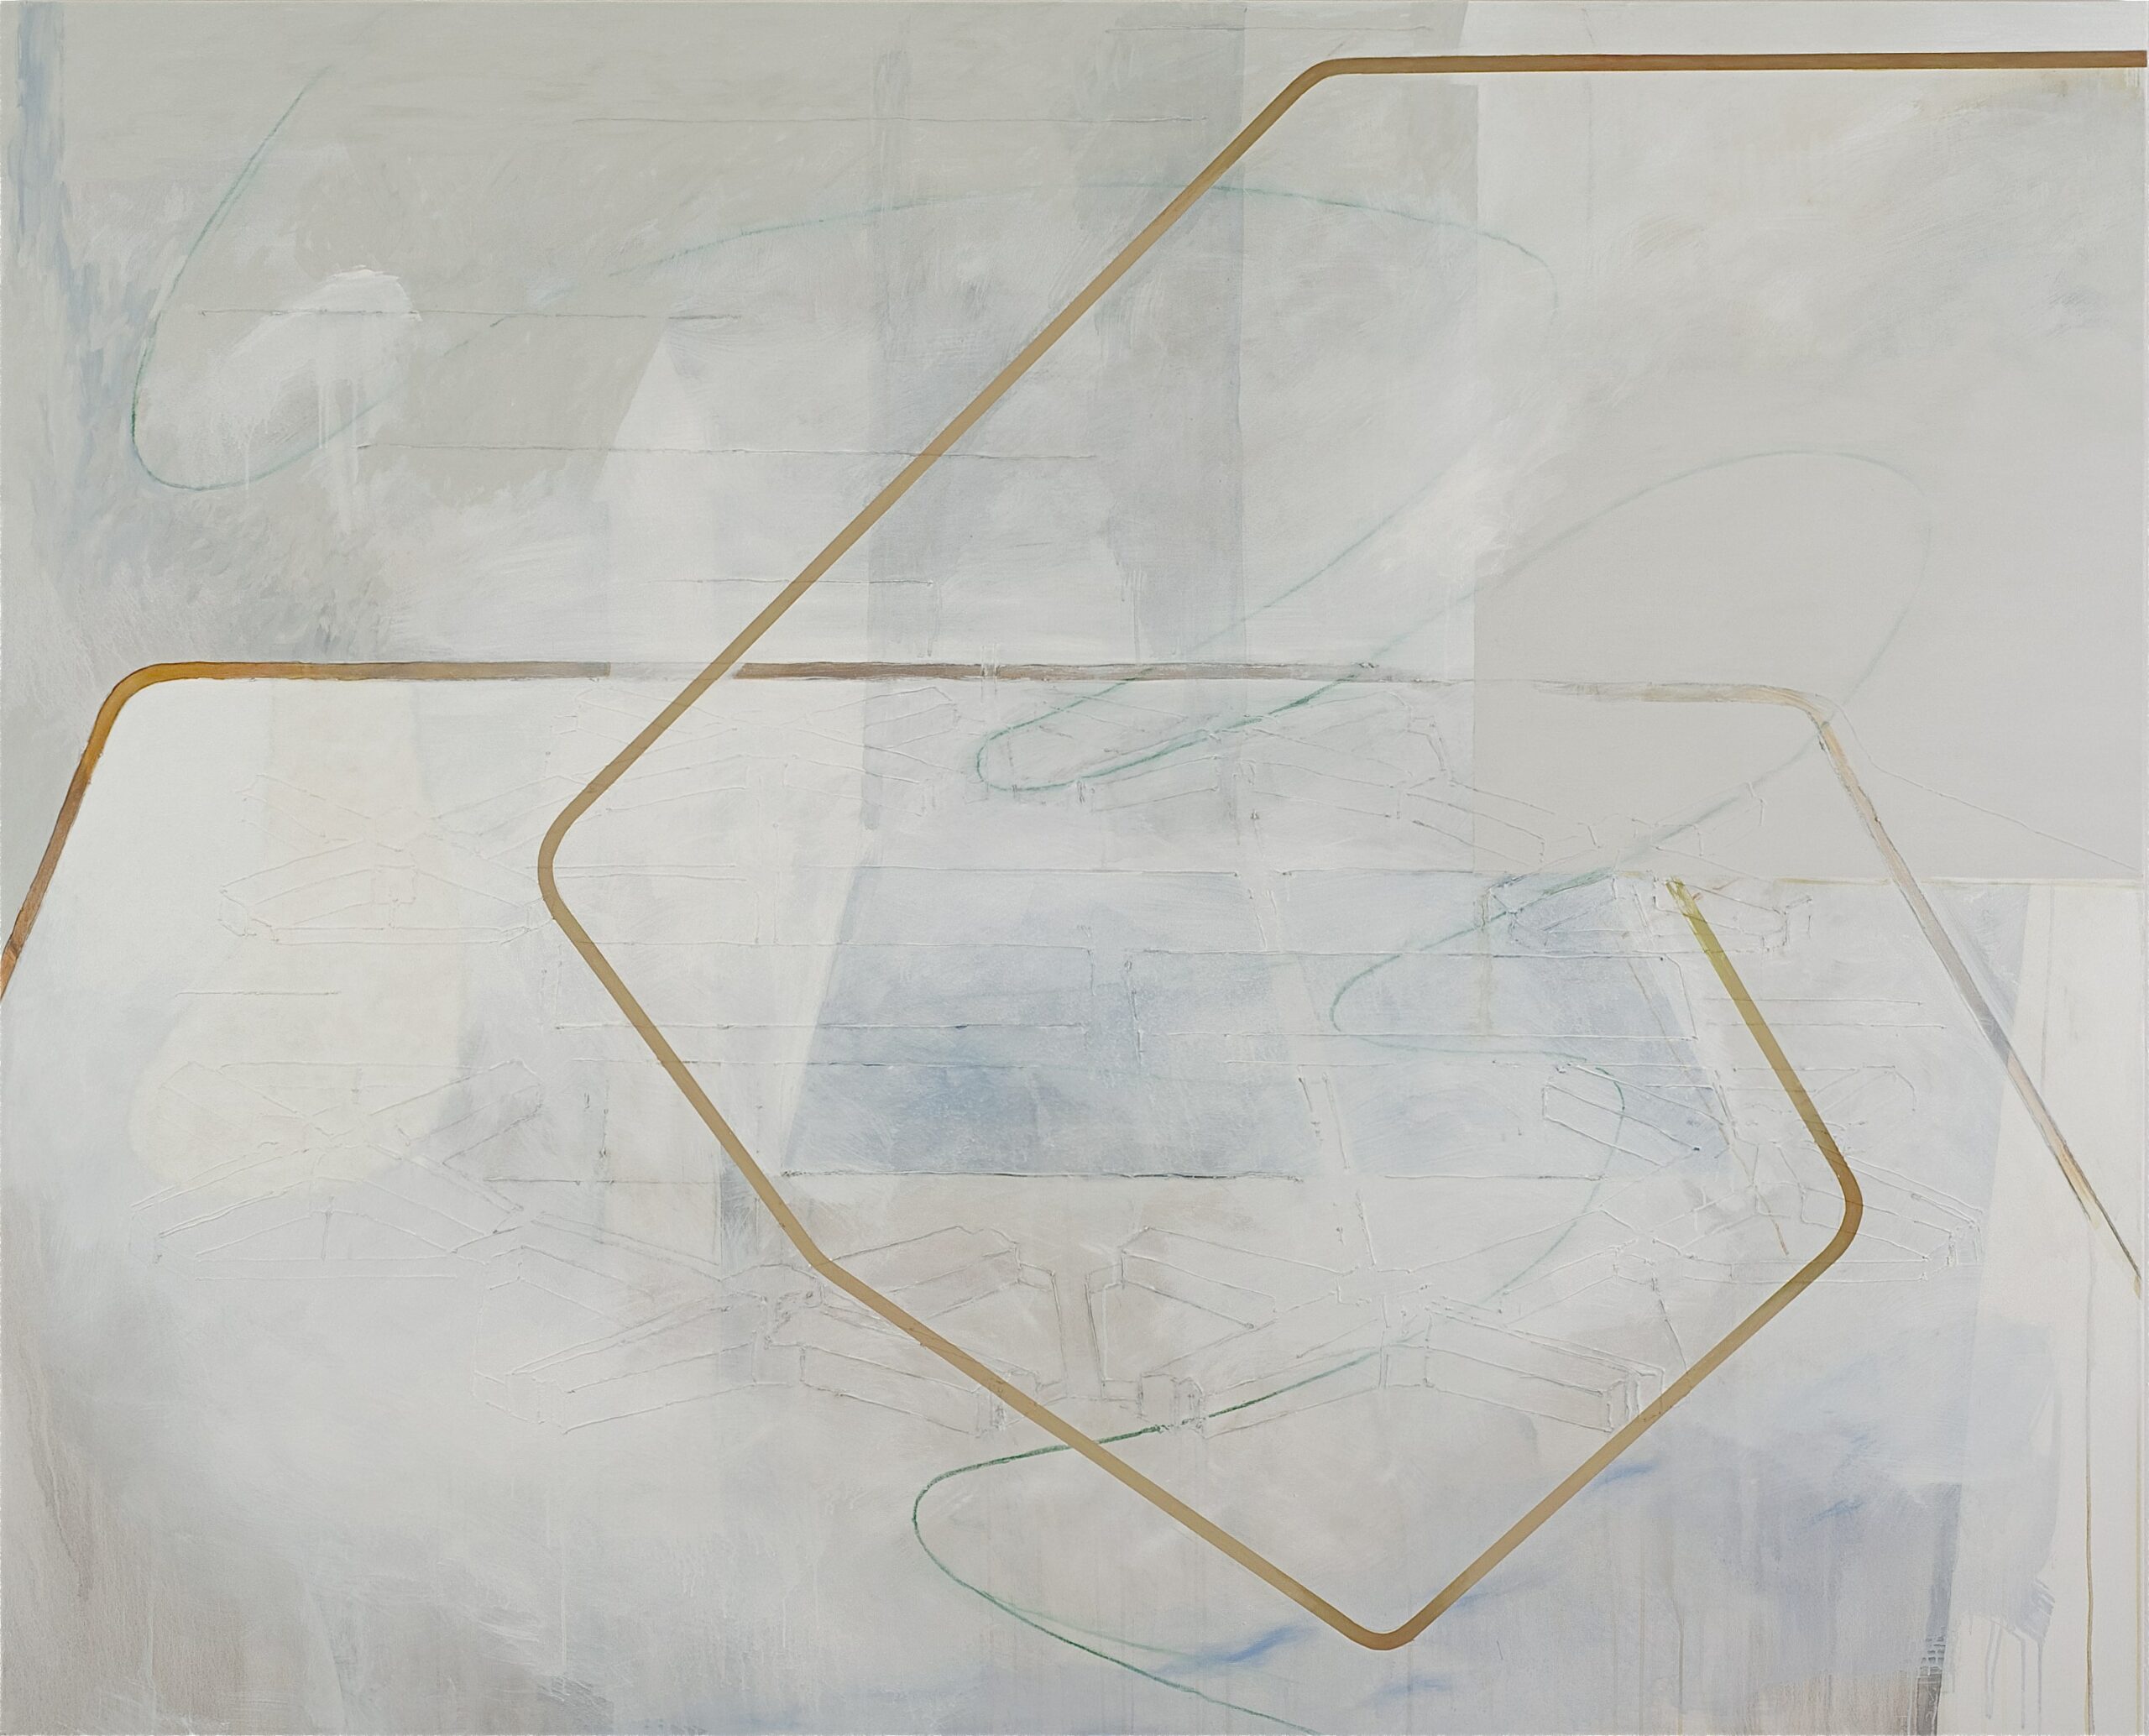 Acryl, Eiöltempera und Öl auf Baumwollstoff, 210 x 260 cm, 2010